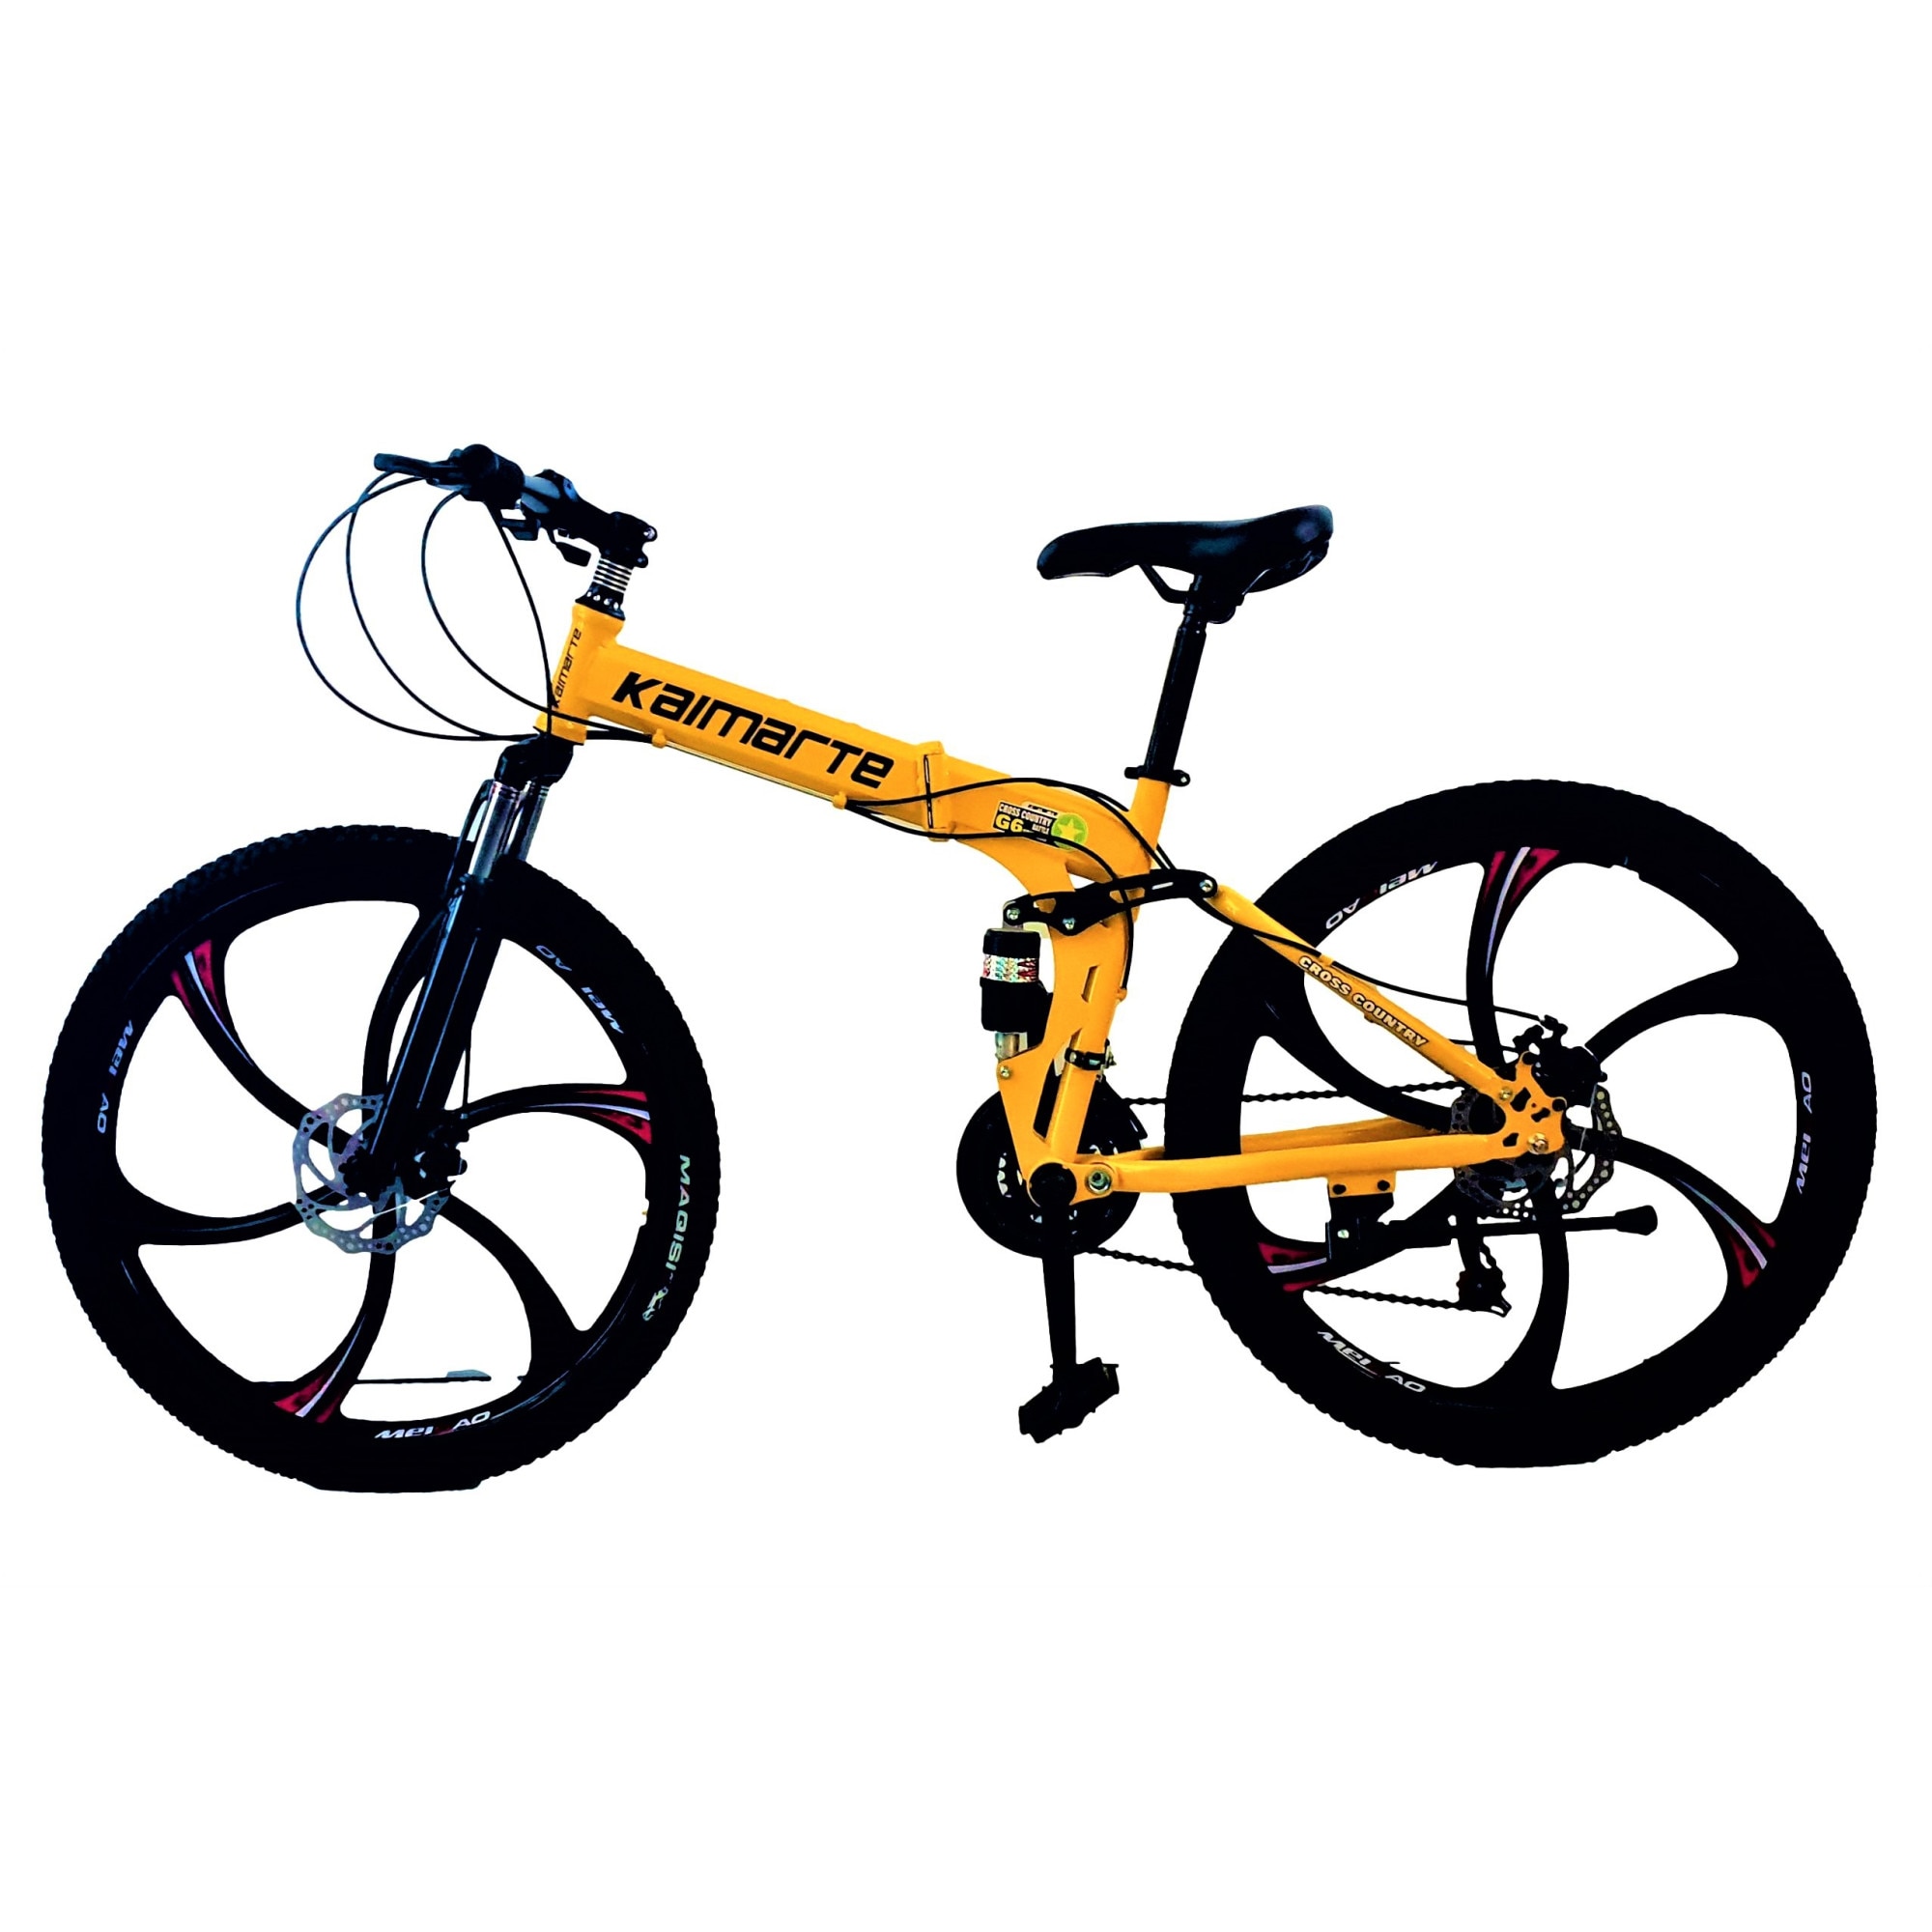 Bicicleta Mountain Bike – KAIMARTE, 26 inch, genti aluminiu 6 cadru otel, frane mecanice pe disc fata/spate, full suspensie, pliabila, 21 de viteze, culoare galben - eMAG.ro